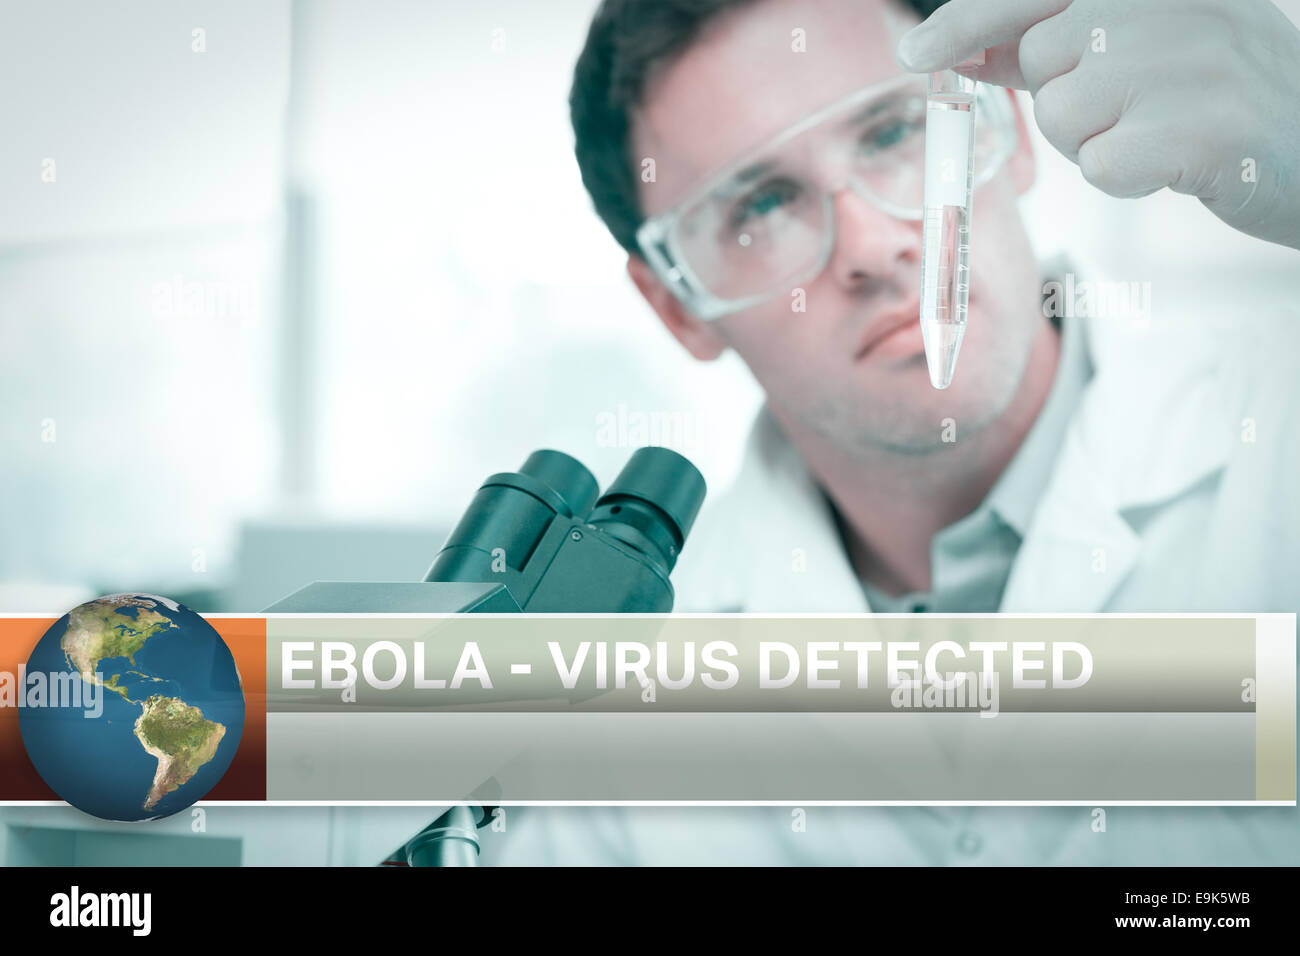 Ebola-News-Flash mit medizinischen Bildern Stockfoto